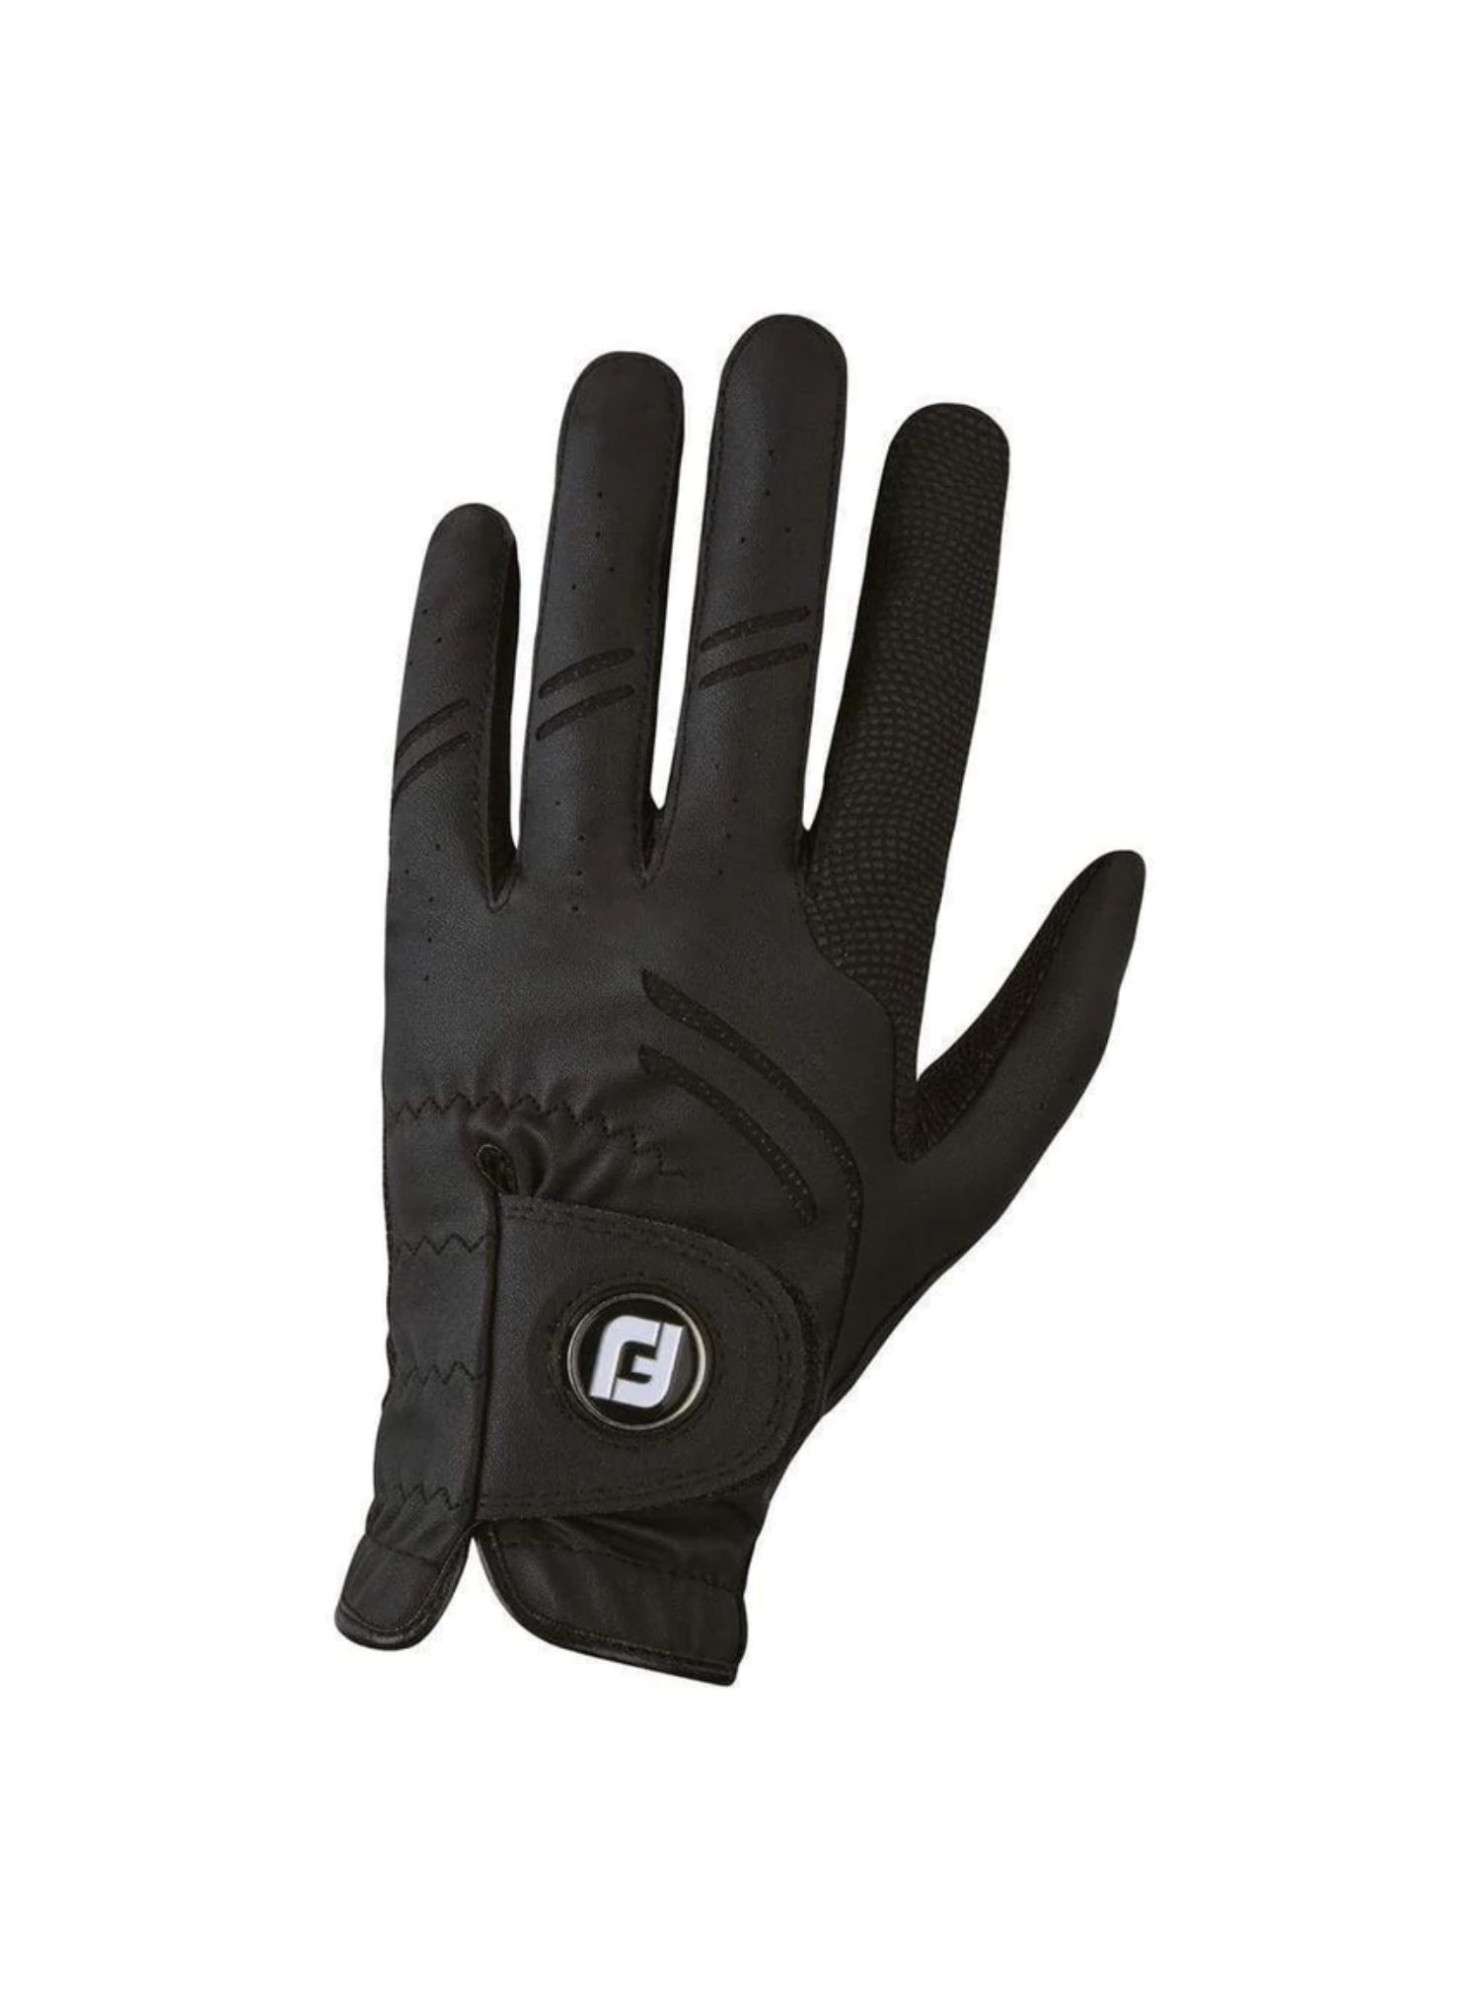 FOOTJOY - Vente gants de golf homme modèle GTXtrem noir homme gaucher